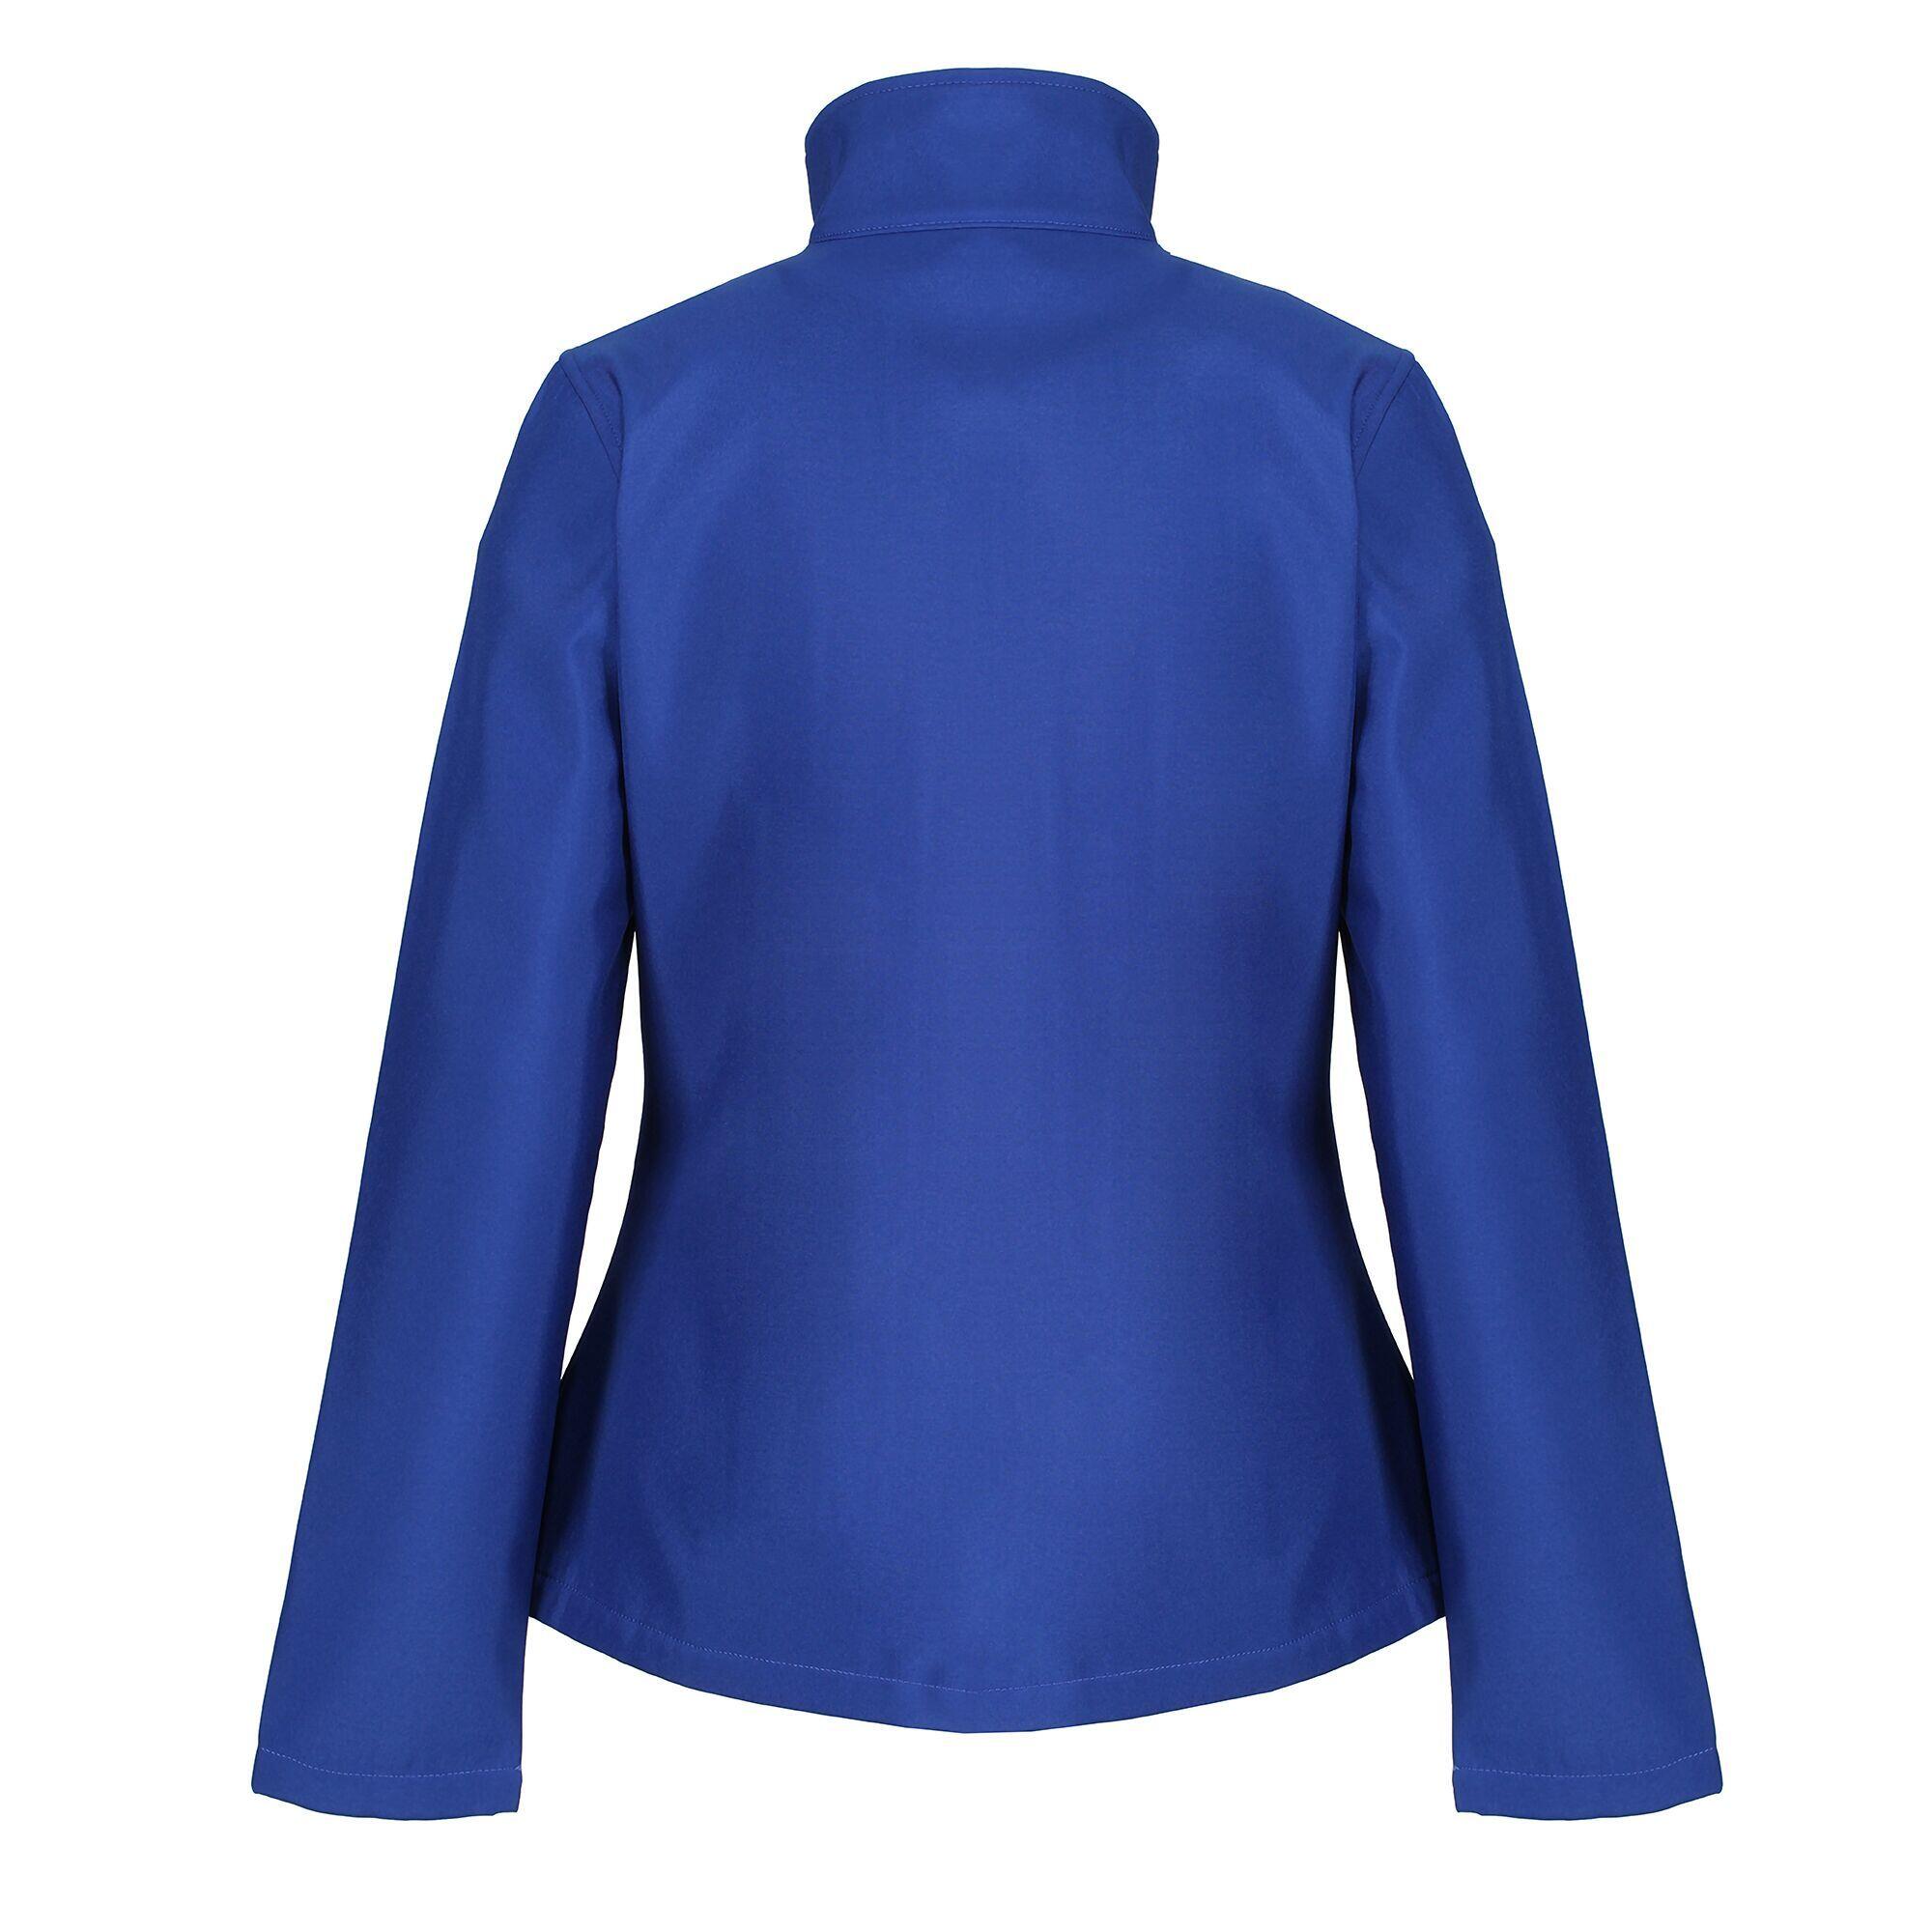 Womens/Ladies Ablaze Printable Softshell Jacket (Royal Blue/Black) 2/5